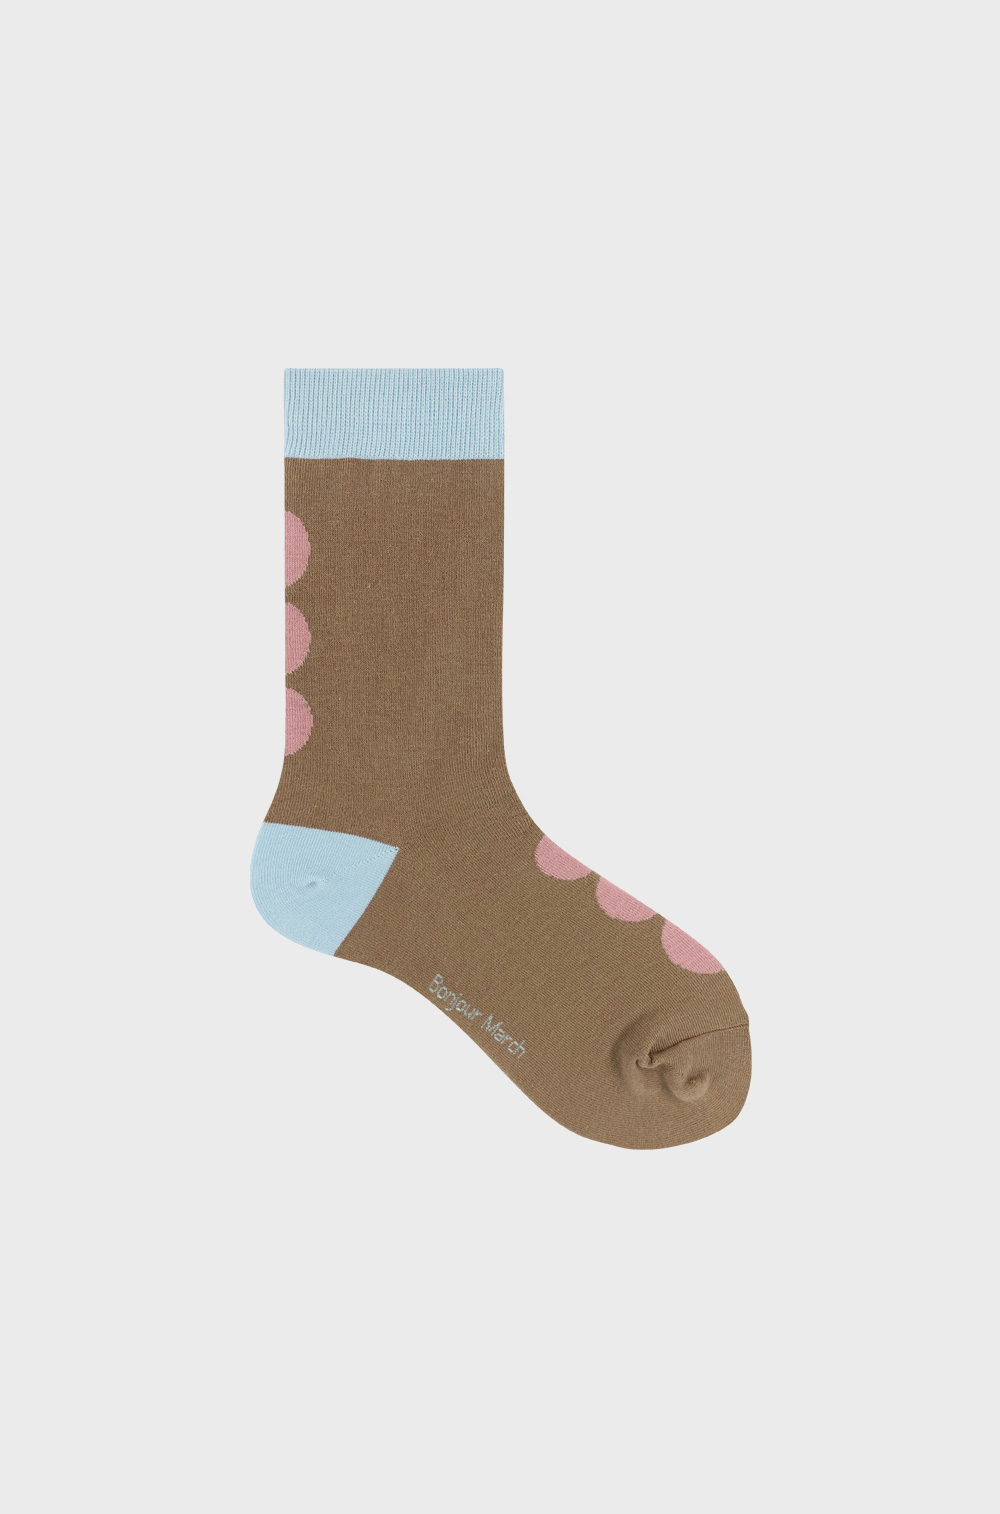 Camelwood dot socks